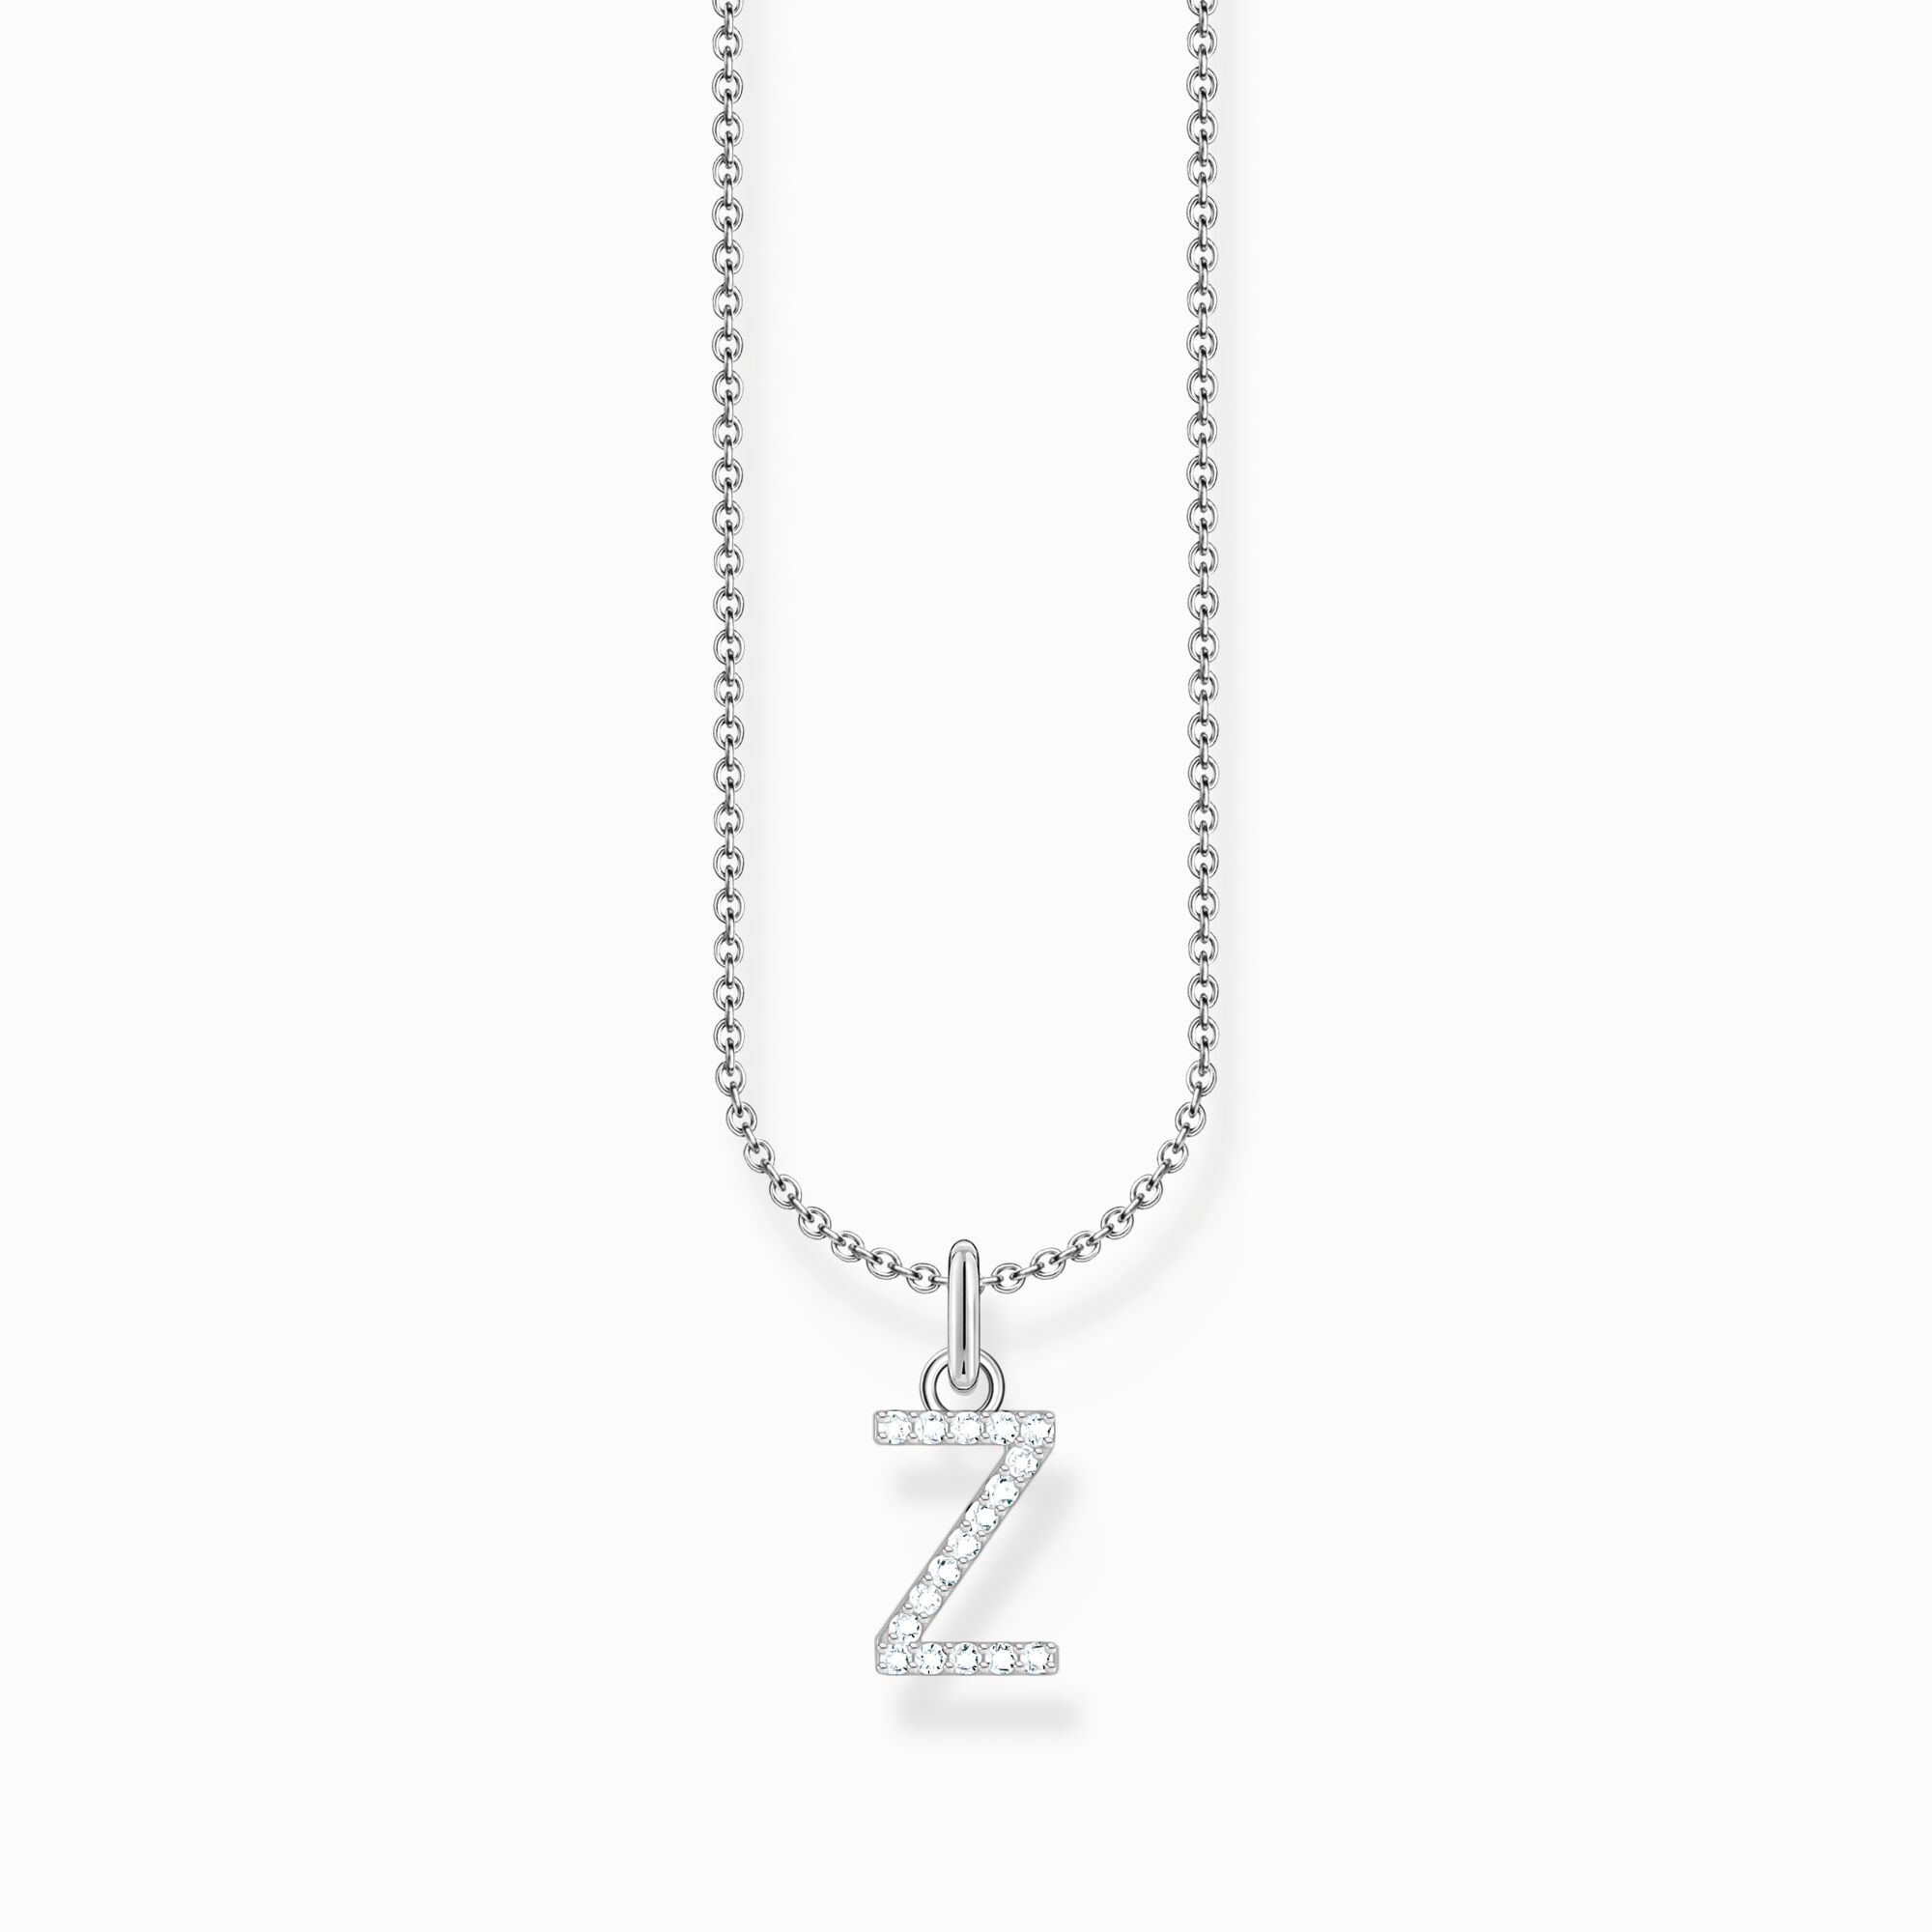 Halsband med bokstaven Z, silver ur kollektionen Charming Collection i THOMAS SABO:s onlineshop